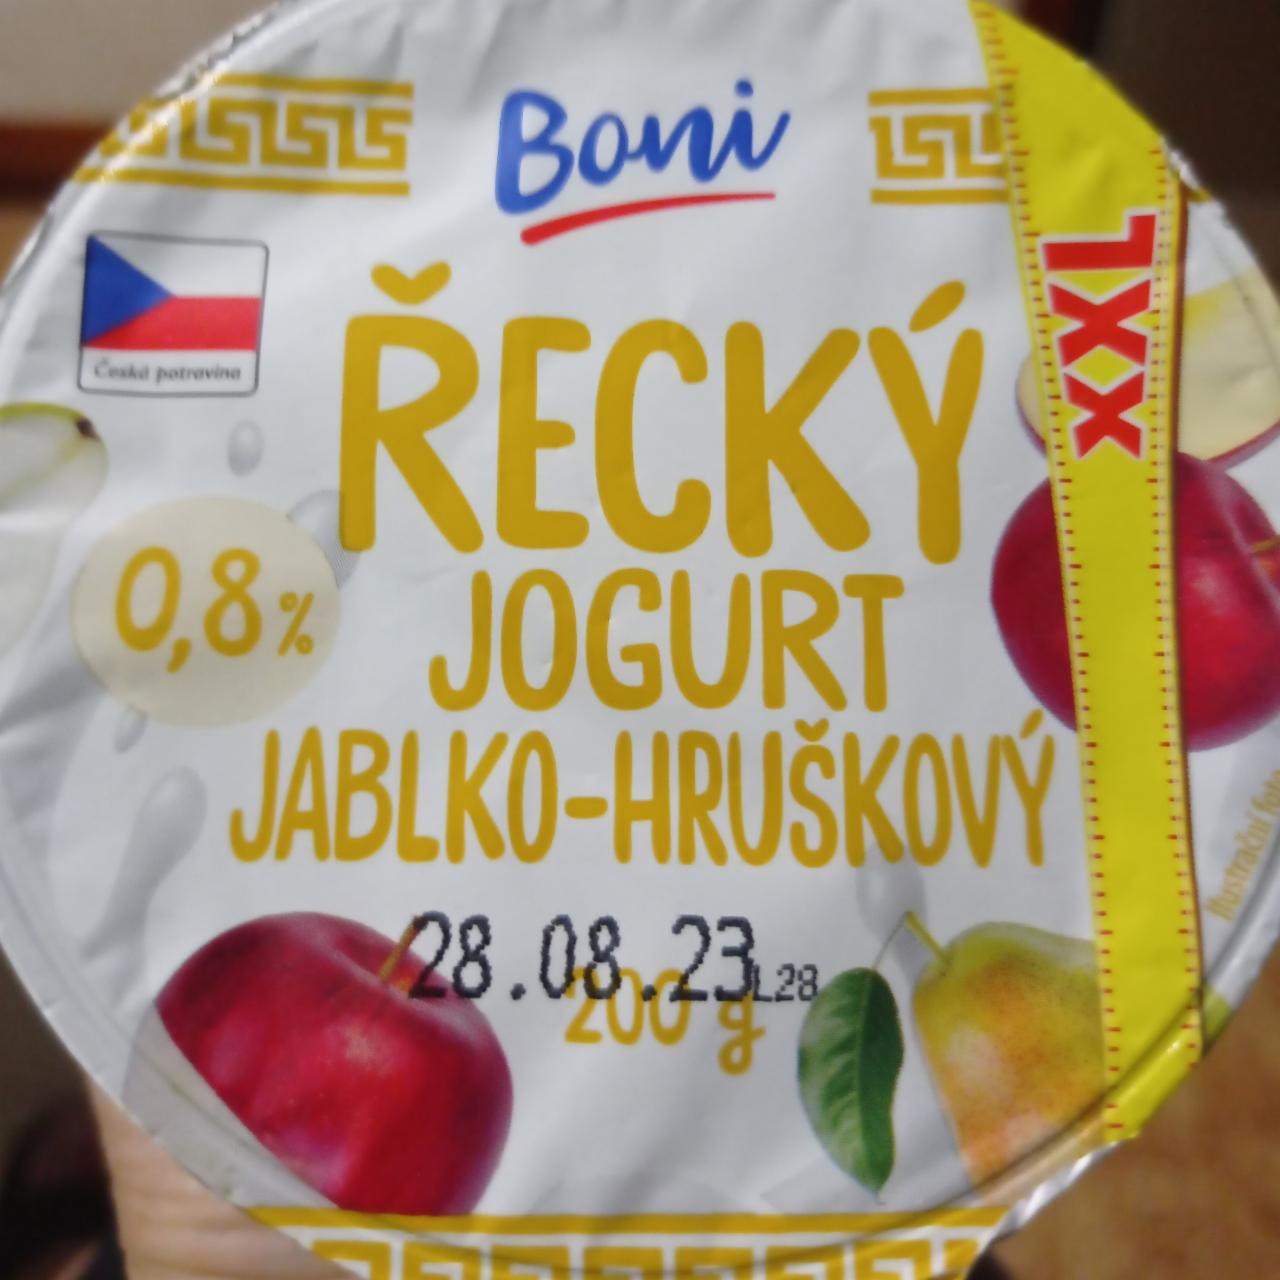 Fotografie - Řecký jogurt, jablko-hruška Boni